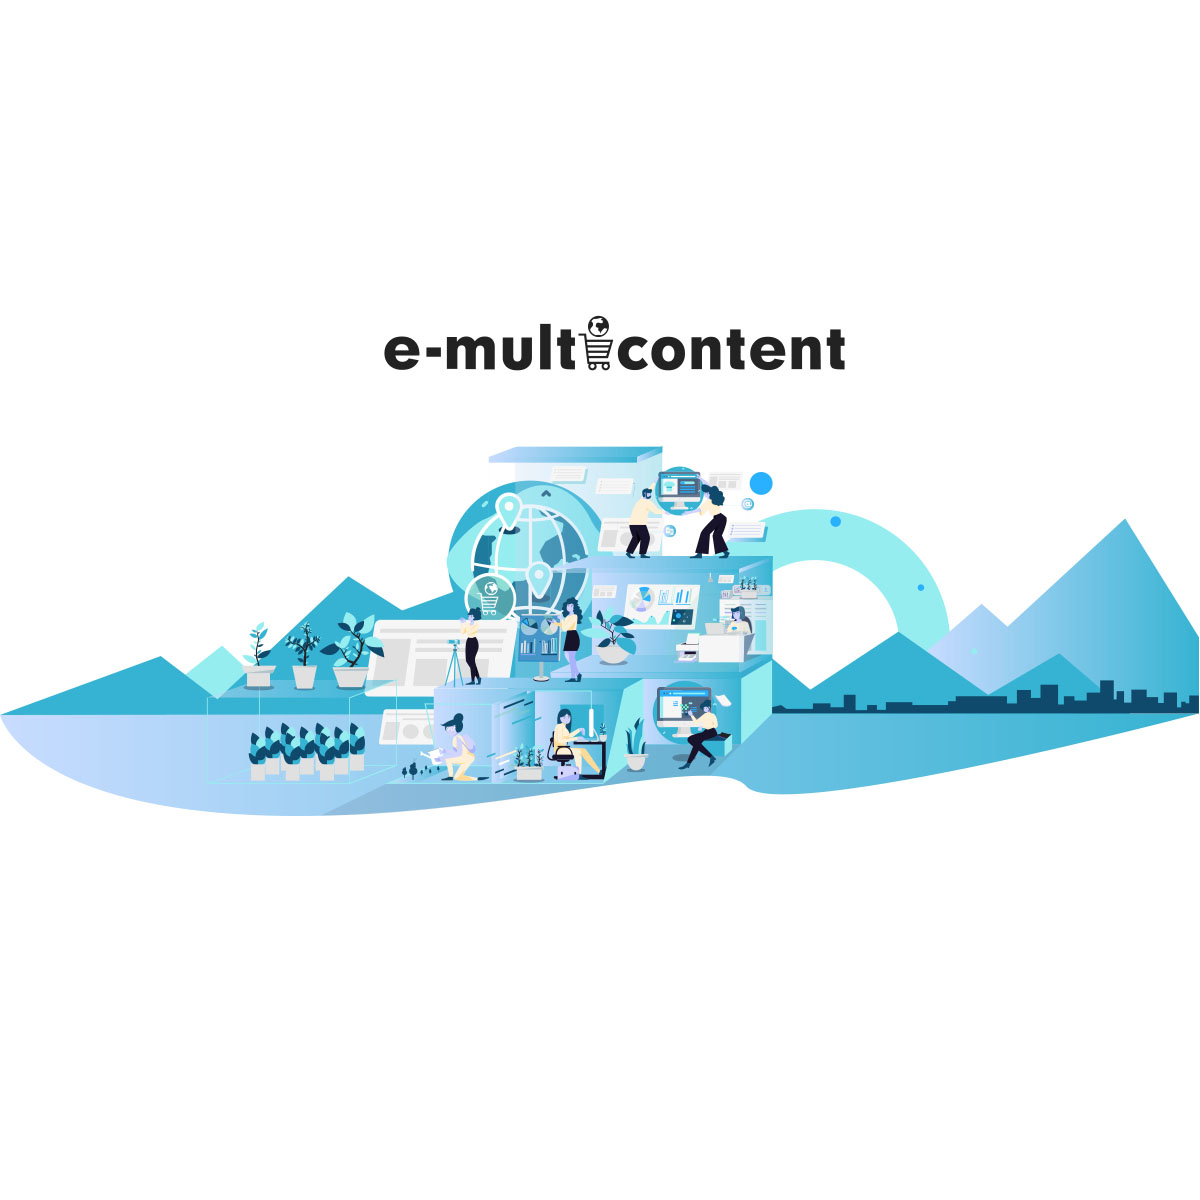 (c) E-multicontent.com